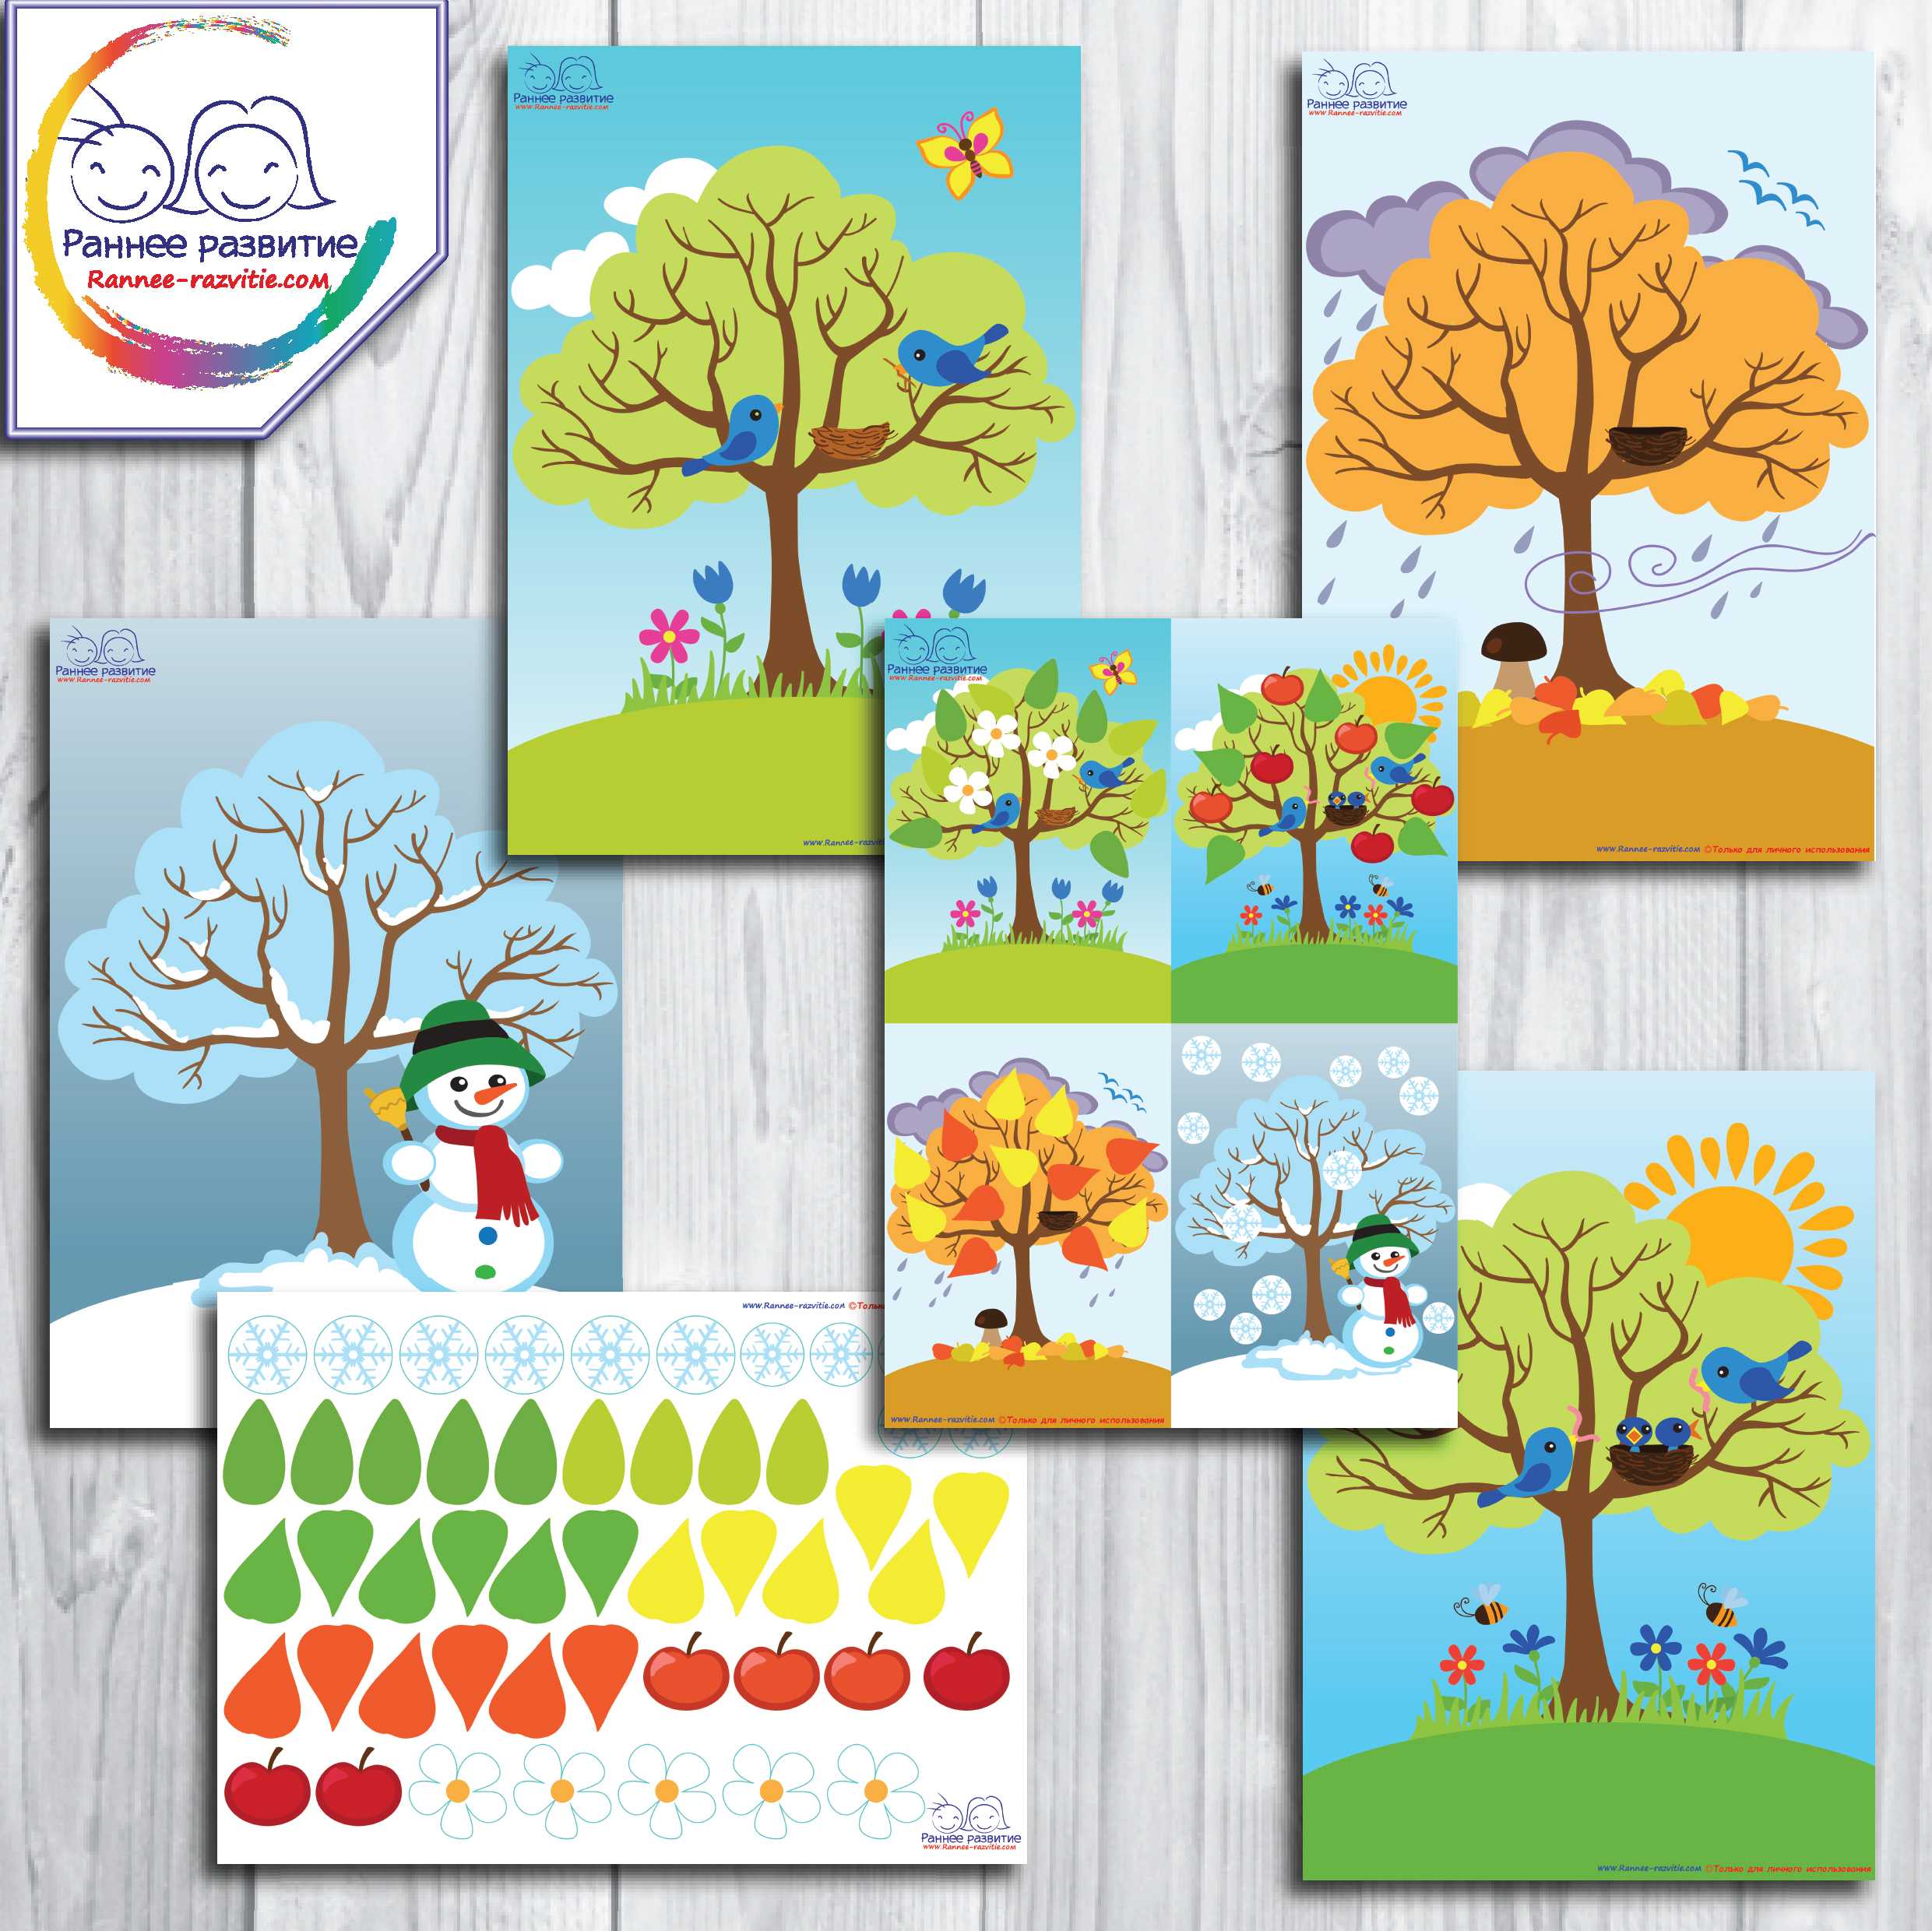 Осень картинки для детей в детском саду: нарисованные, раскраски